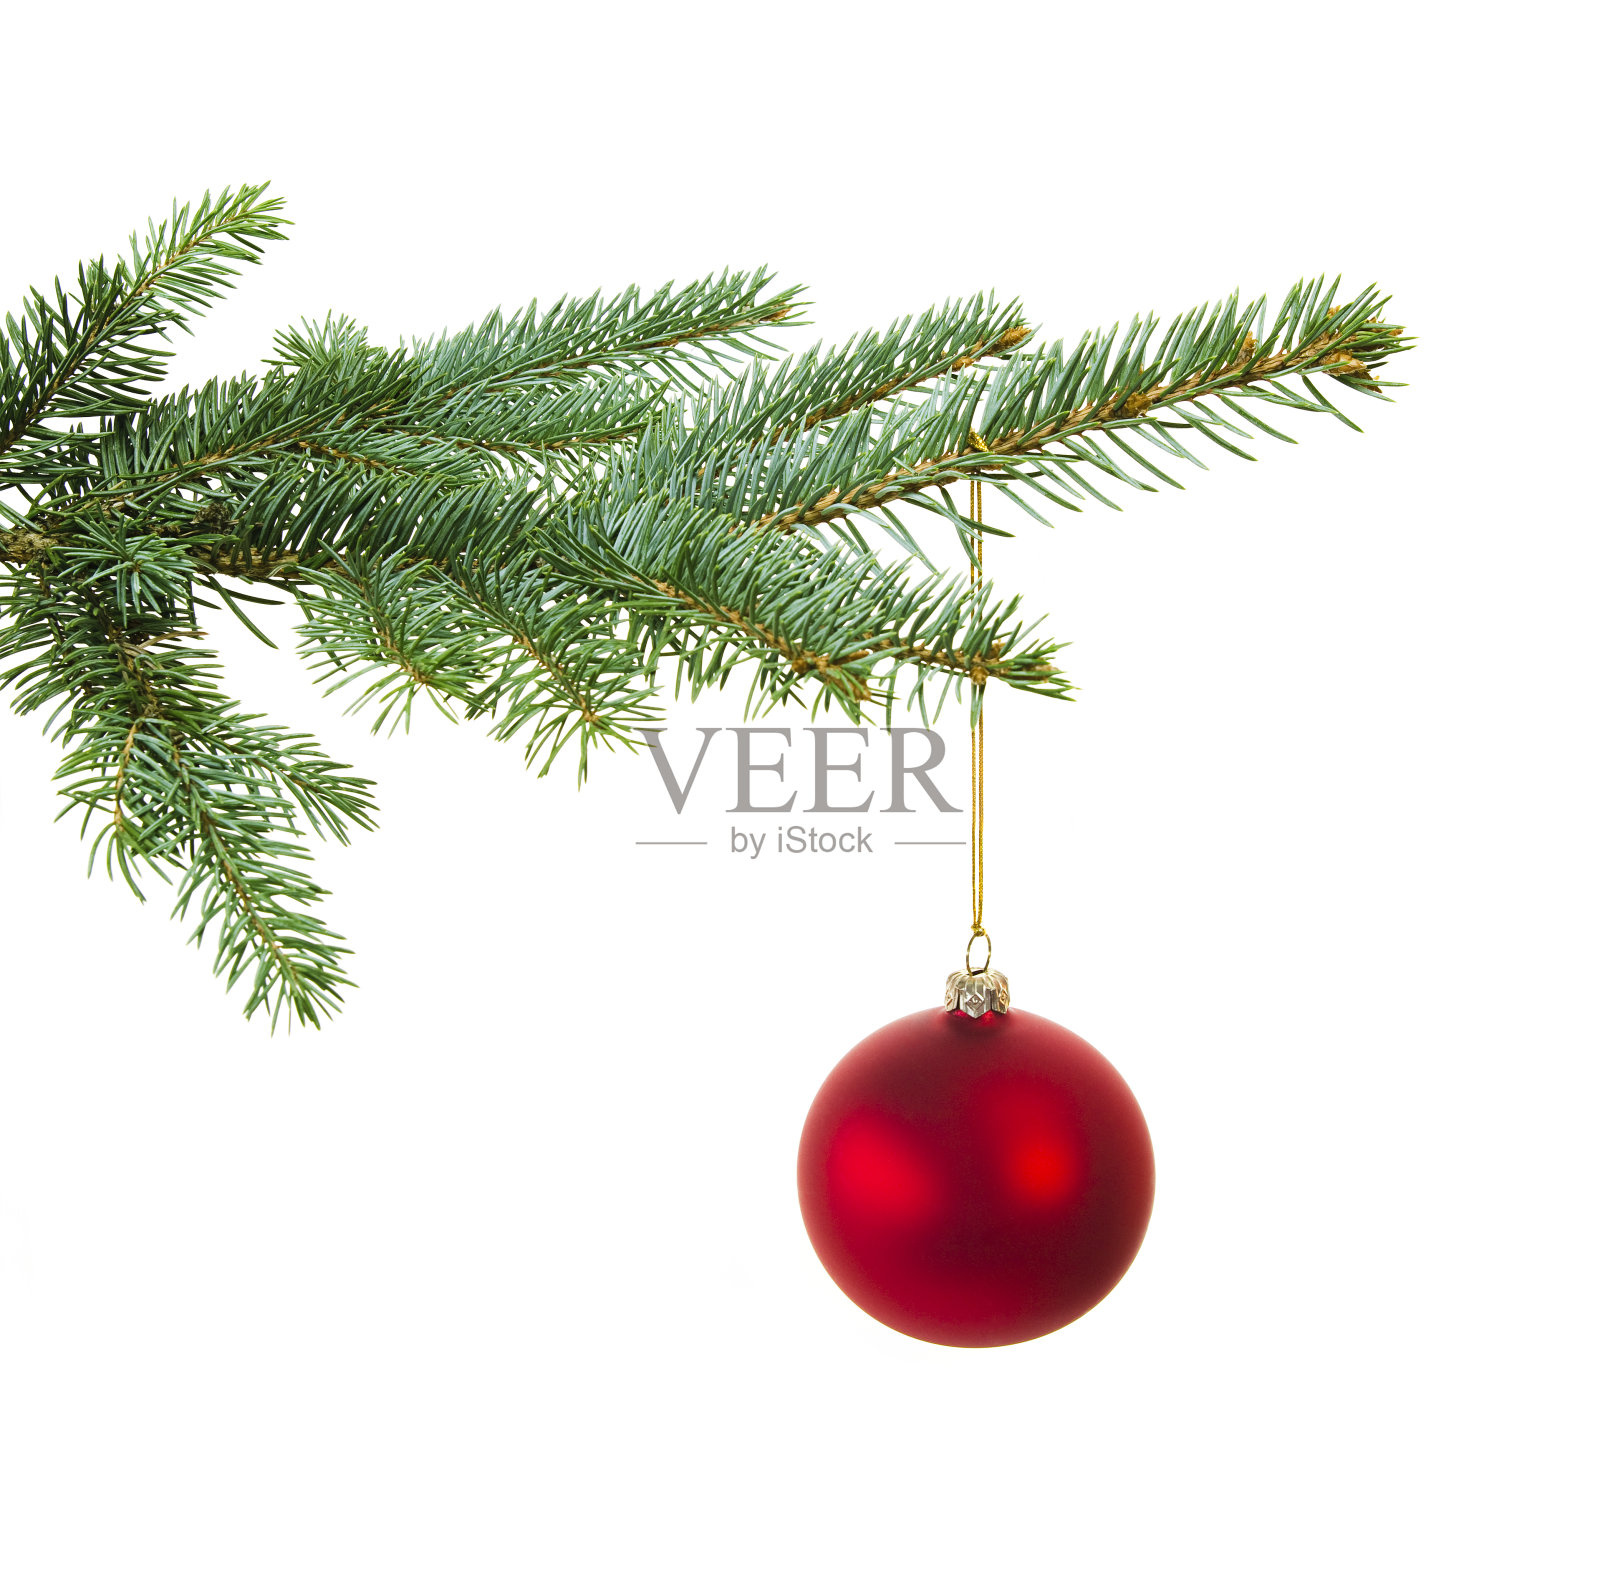 一张有一个红球的圣诞树树枝的照片照片摄影图片